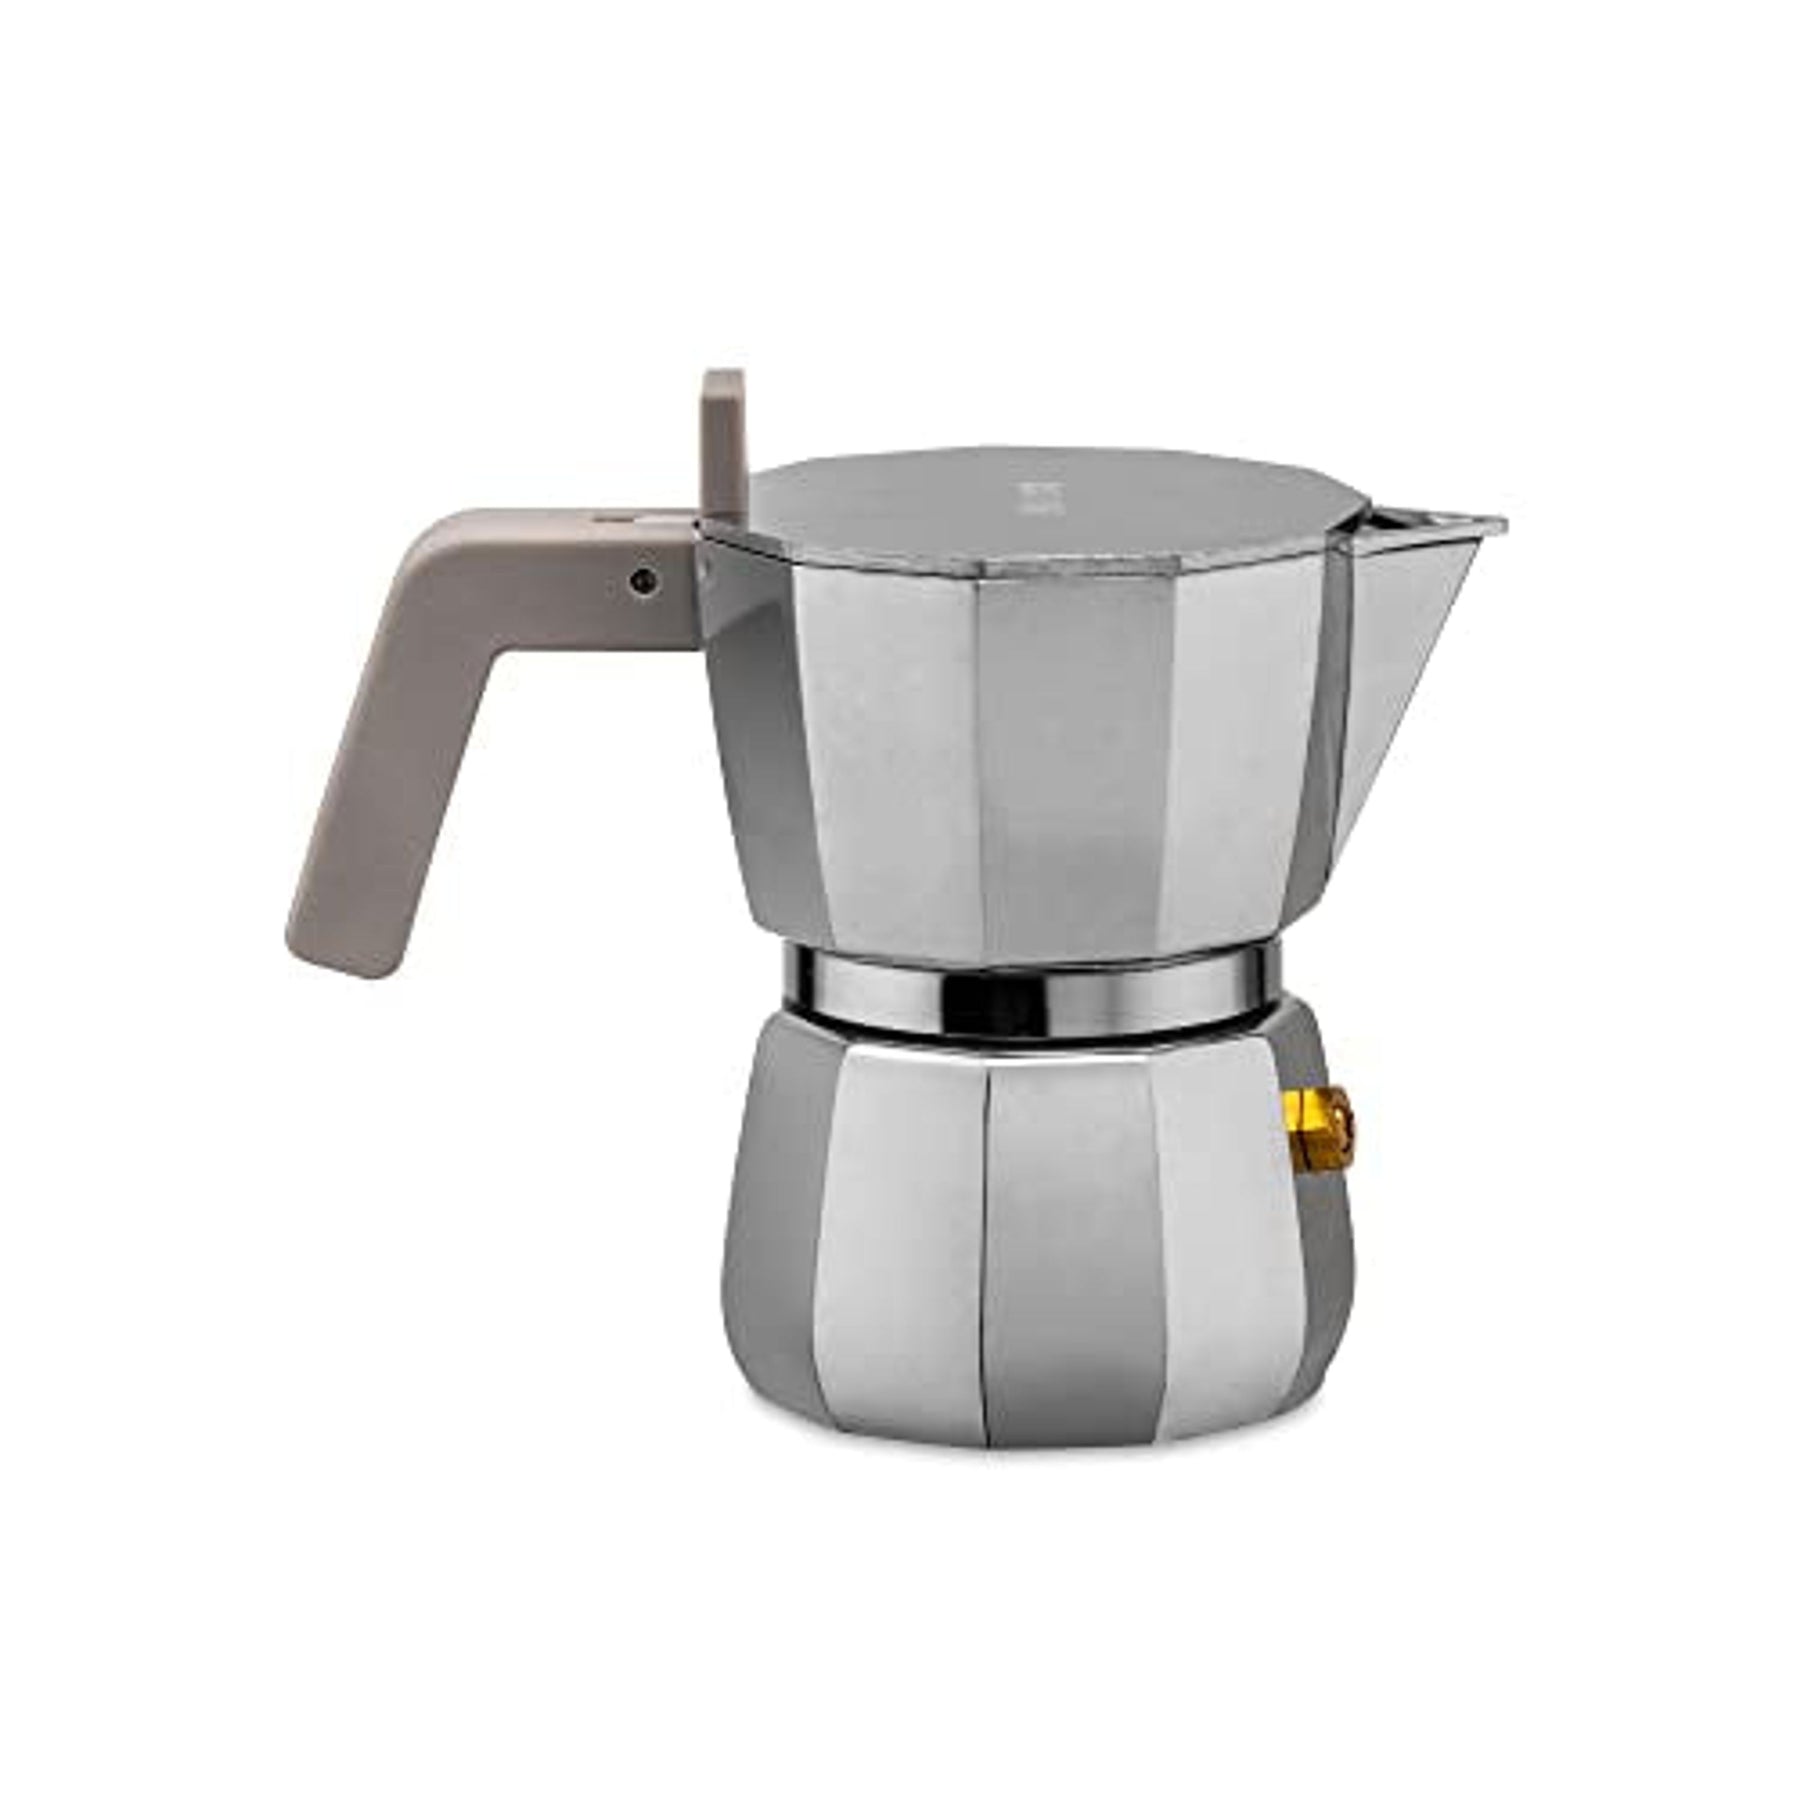 Oggi Stovetop Espresso Maker Moka Pot- 4 cup (4oz), Borosilicate Glass,  Italian Coffee Maker, Espresso Coffee Maker, Stovetop Coffee Maker